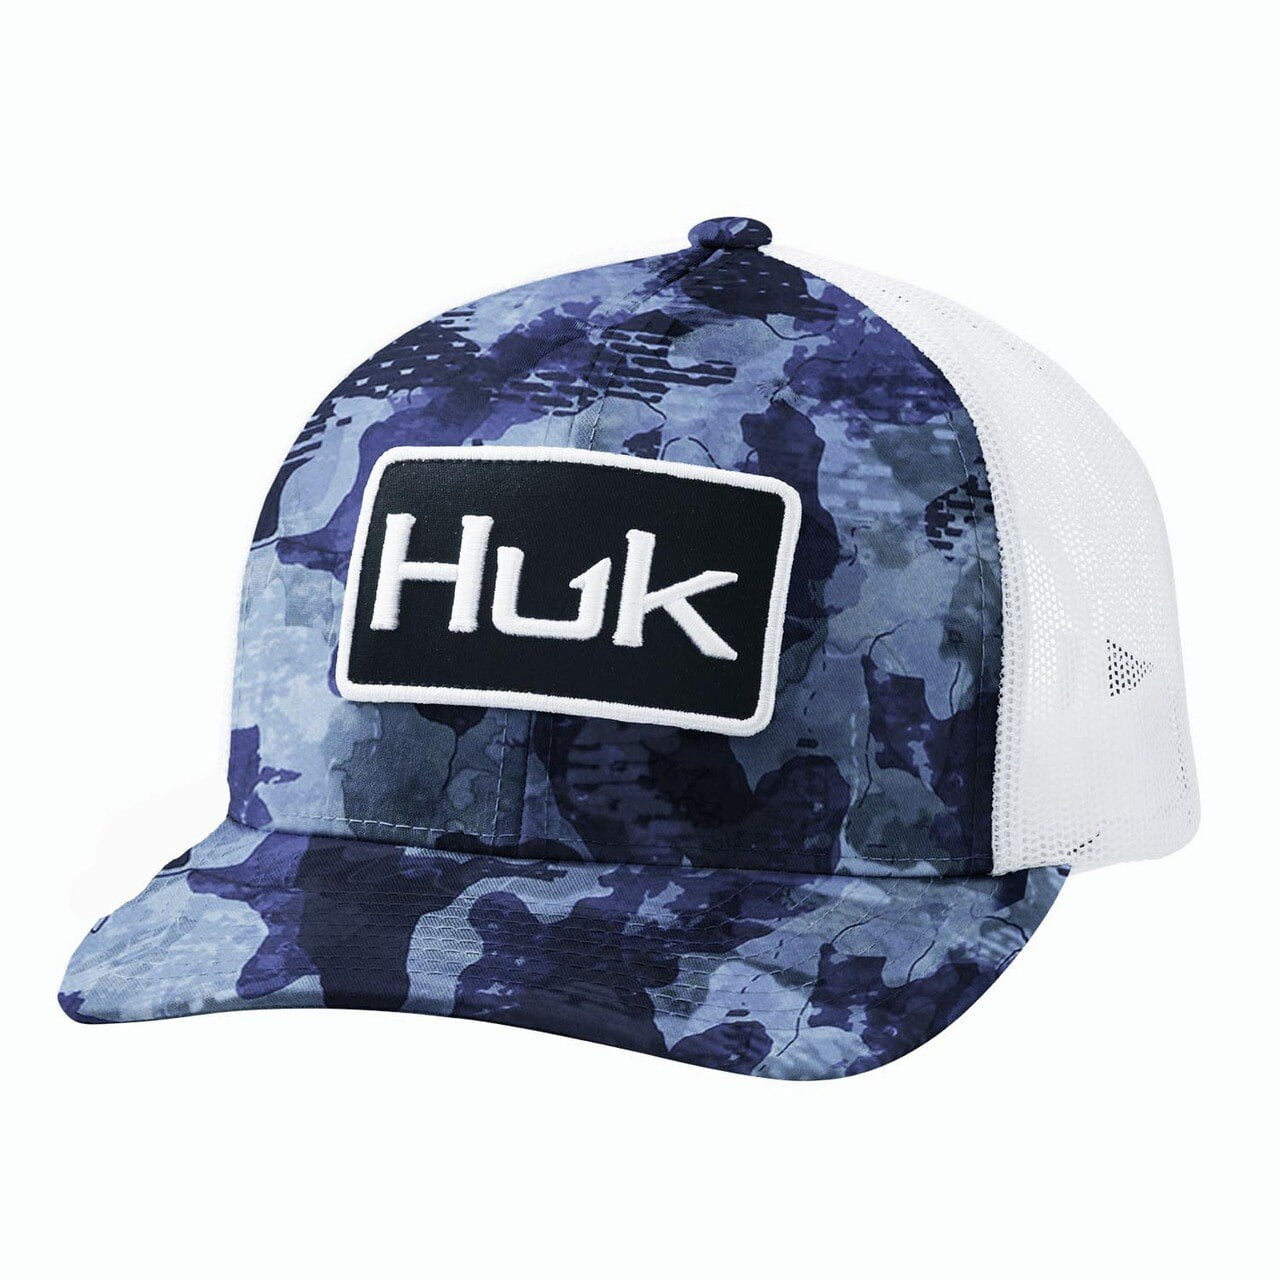 Huk Men's Huk'd Up Performance Stretch Hat (Huk'd Up - Black 